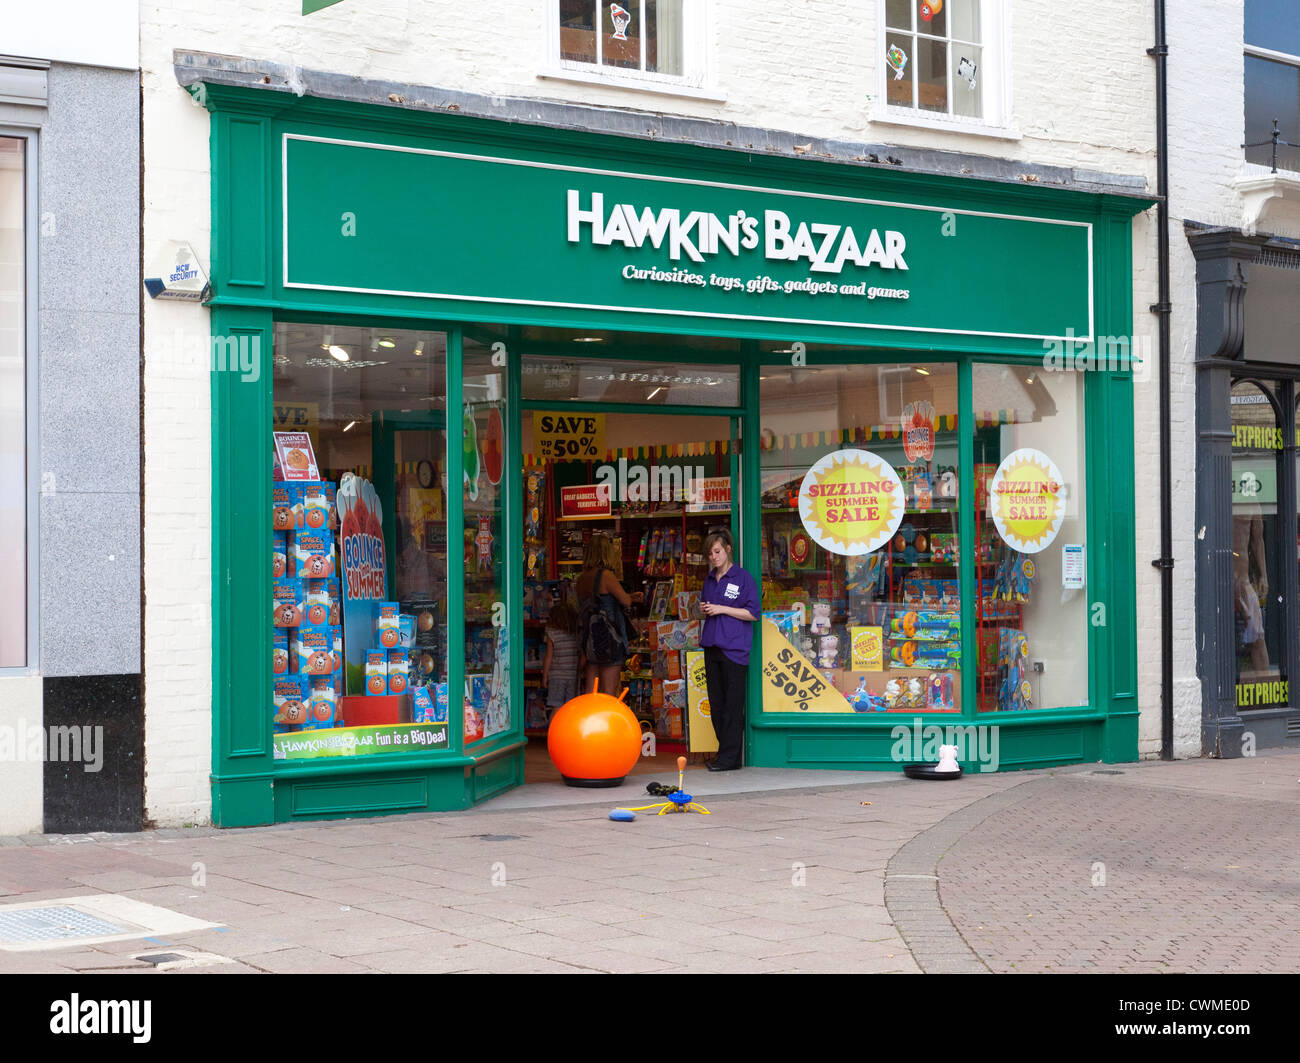 Hawkin's Bazaar store in the UK Stock Photo